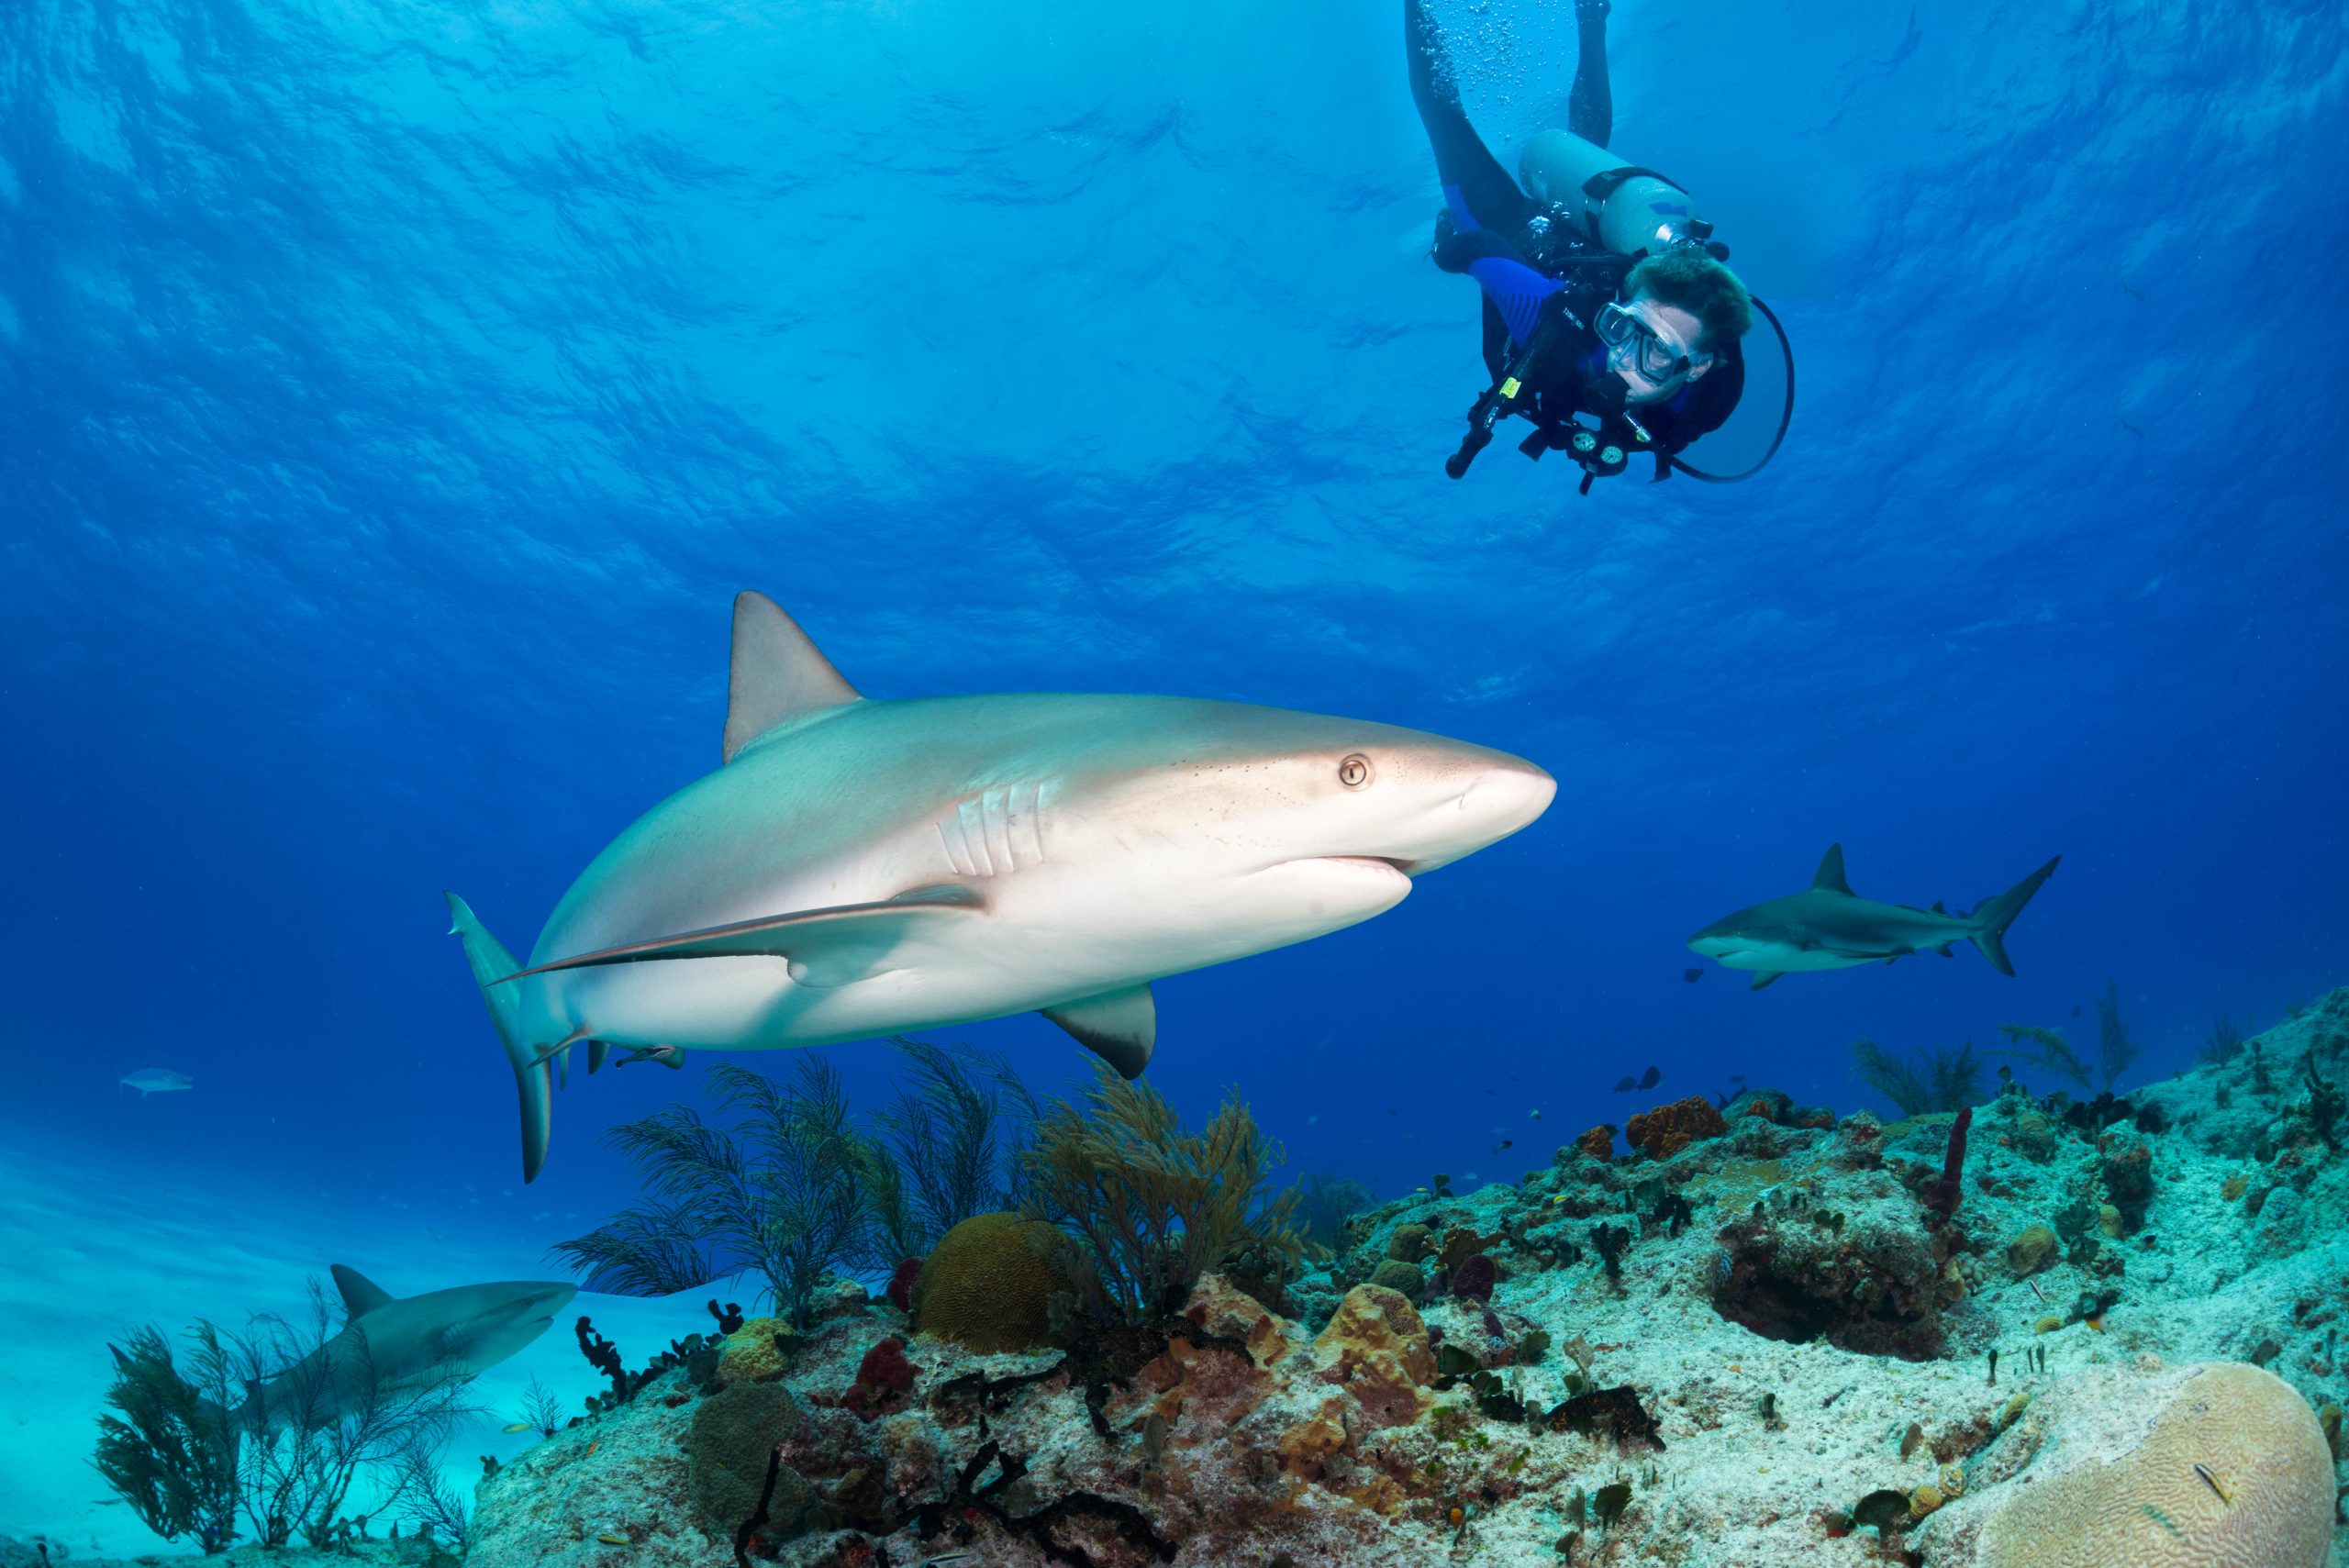 A scuba diver exploring the Bahamas while scuba diving with a shark.